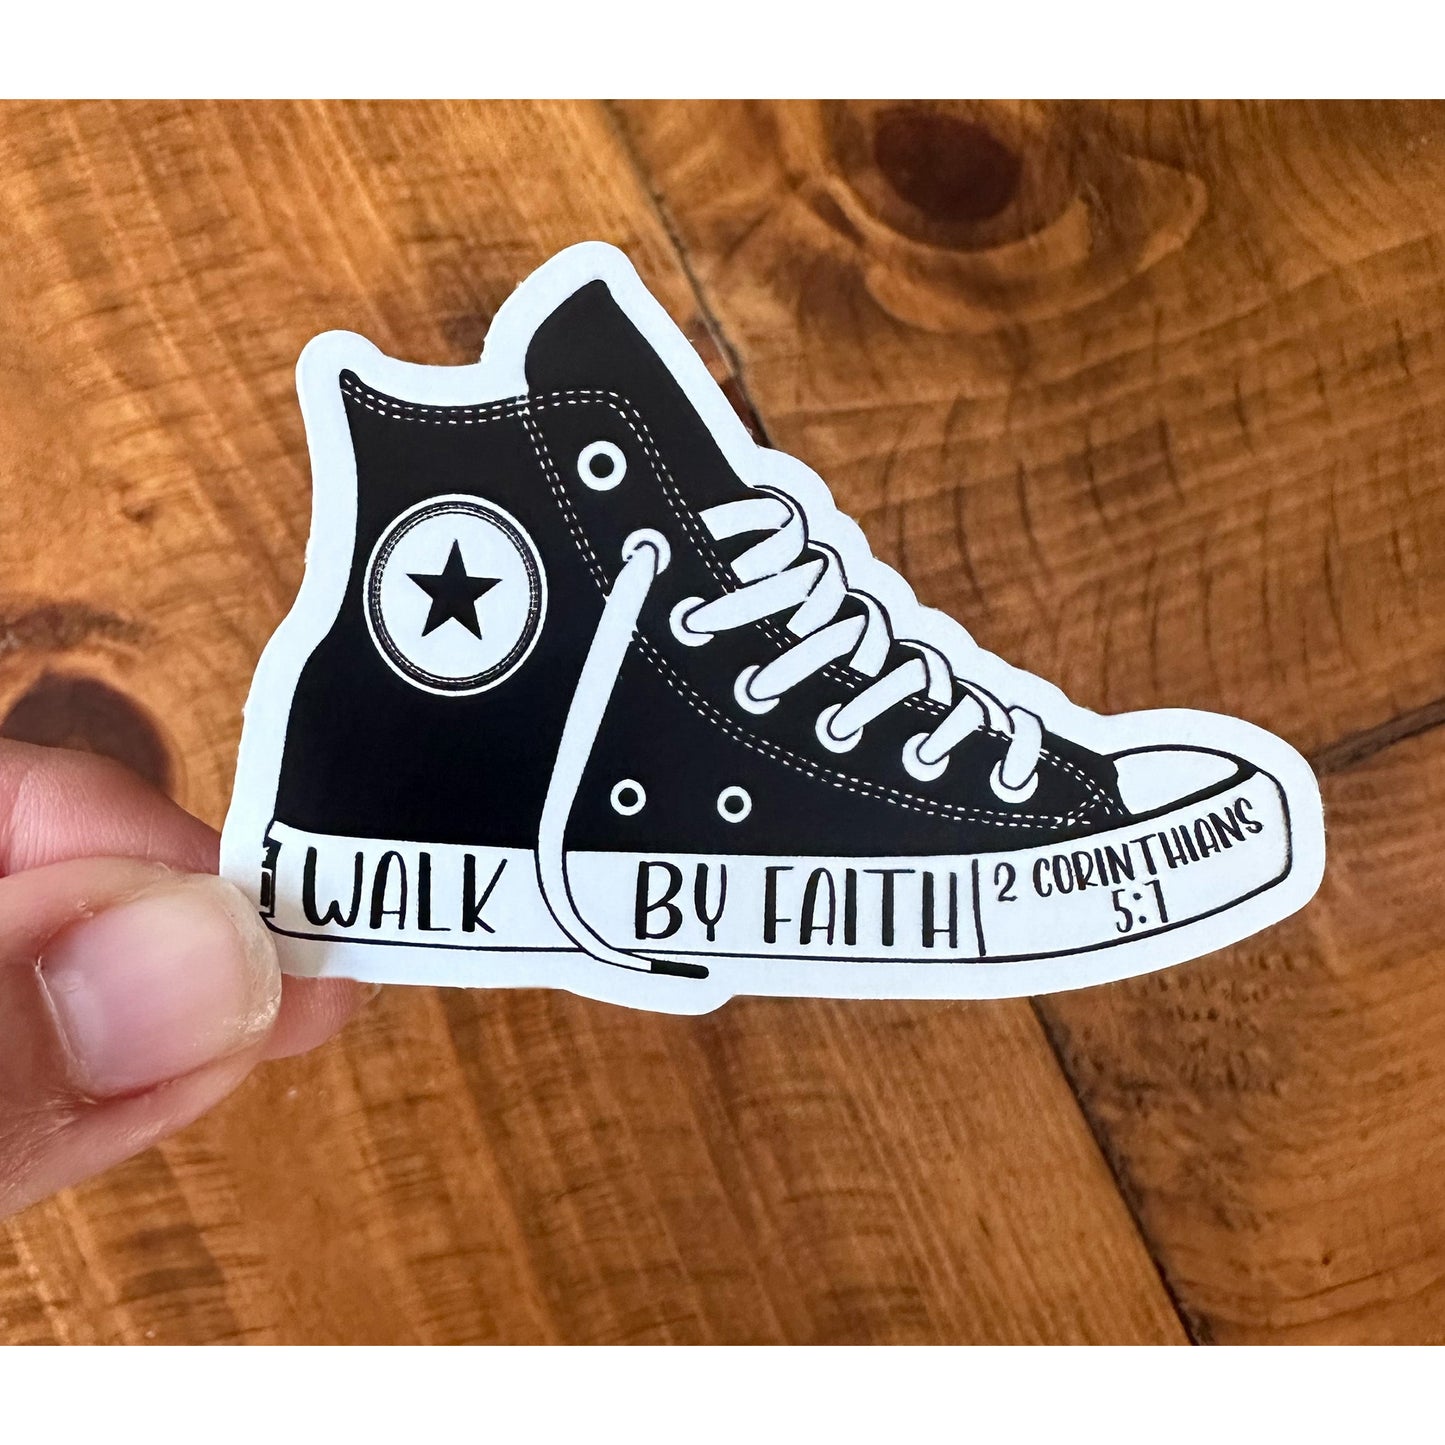 Walk By Faith | Vinyl Christian Sticker